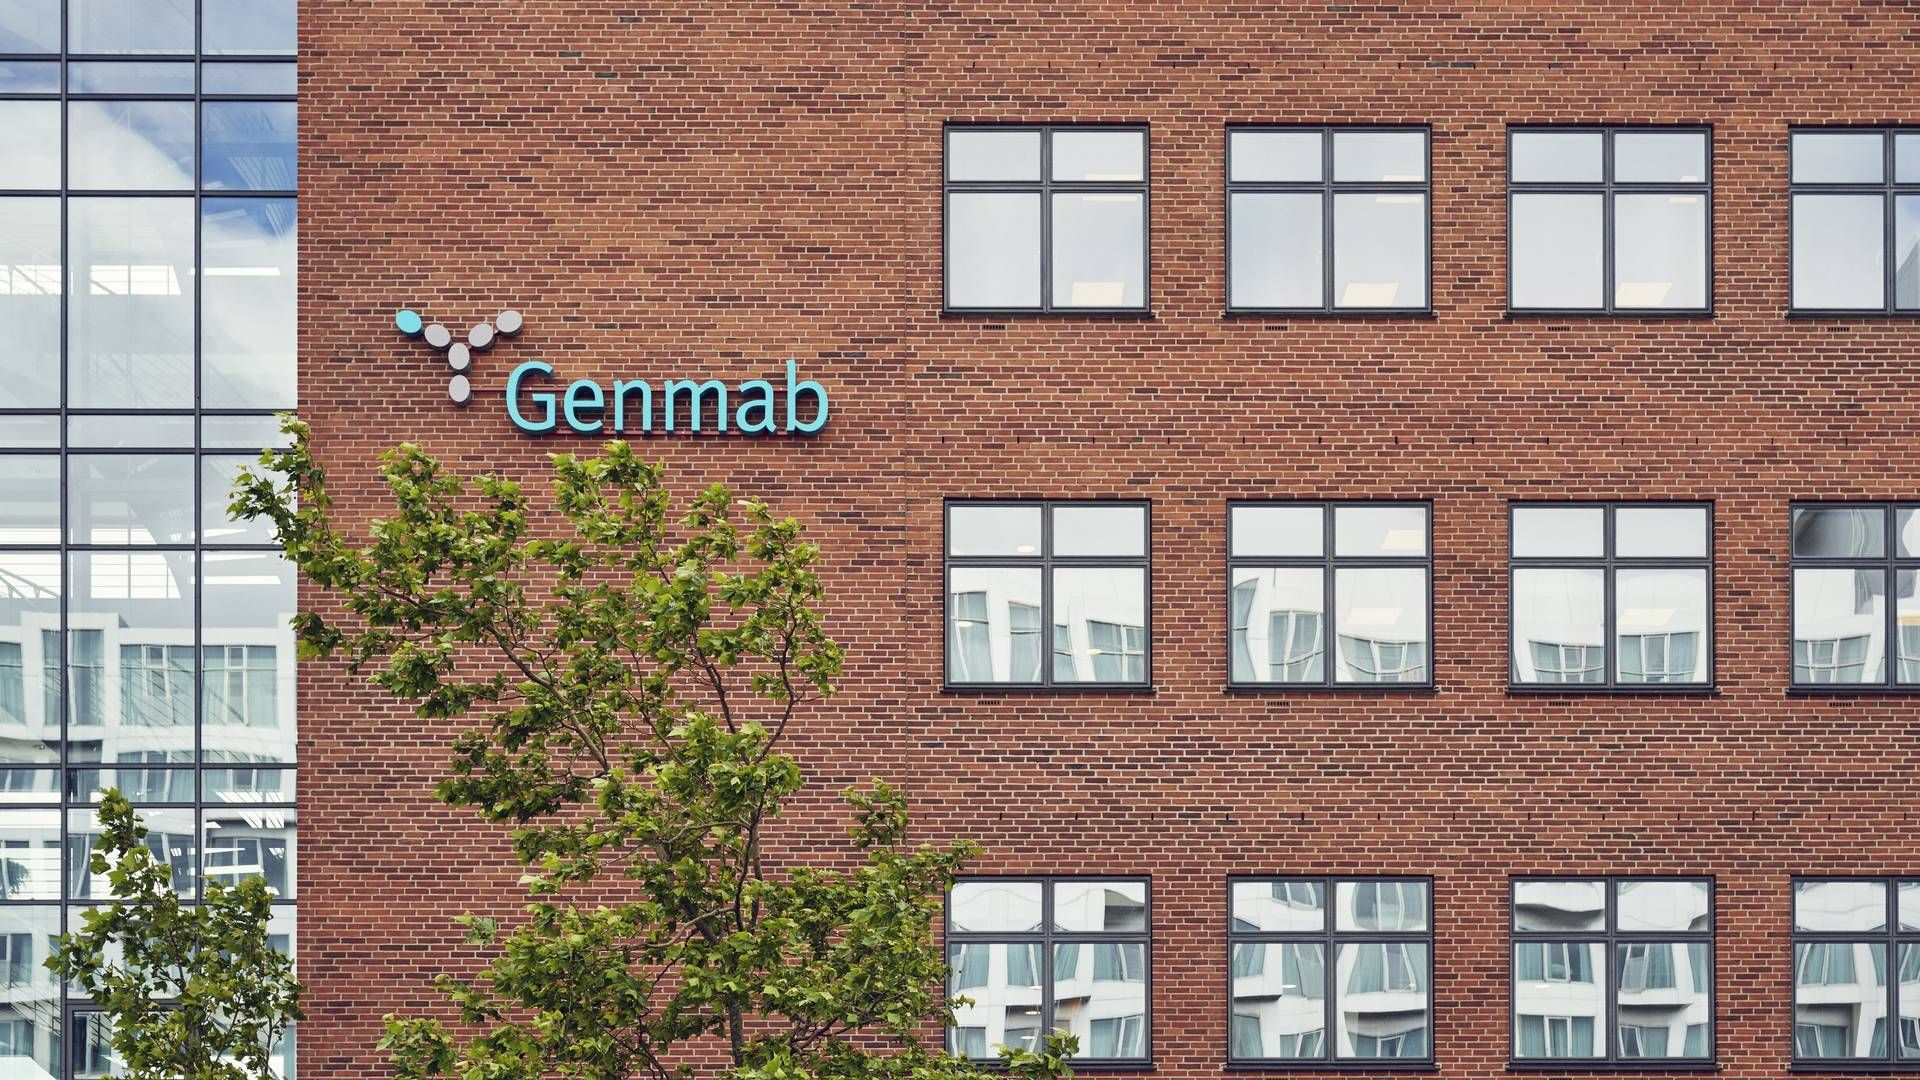 Genmab holder fortsat til i Kalvebod Brygge i København. Snart rykker selskabet til helt nye lokaler i Valby. | Foto: Tuala Hjarnø / Genmab / Pr